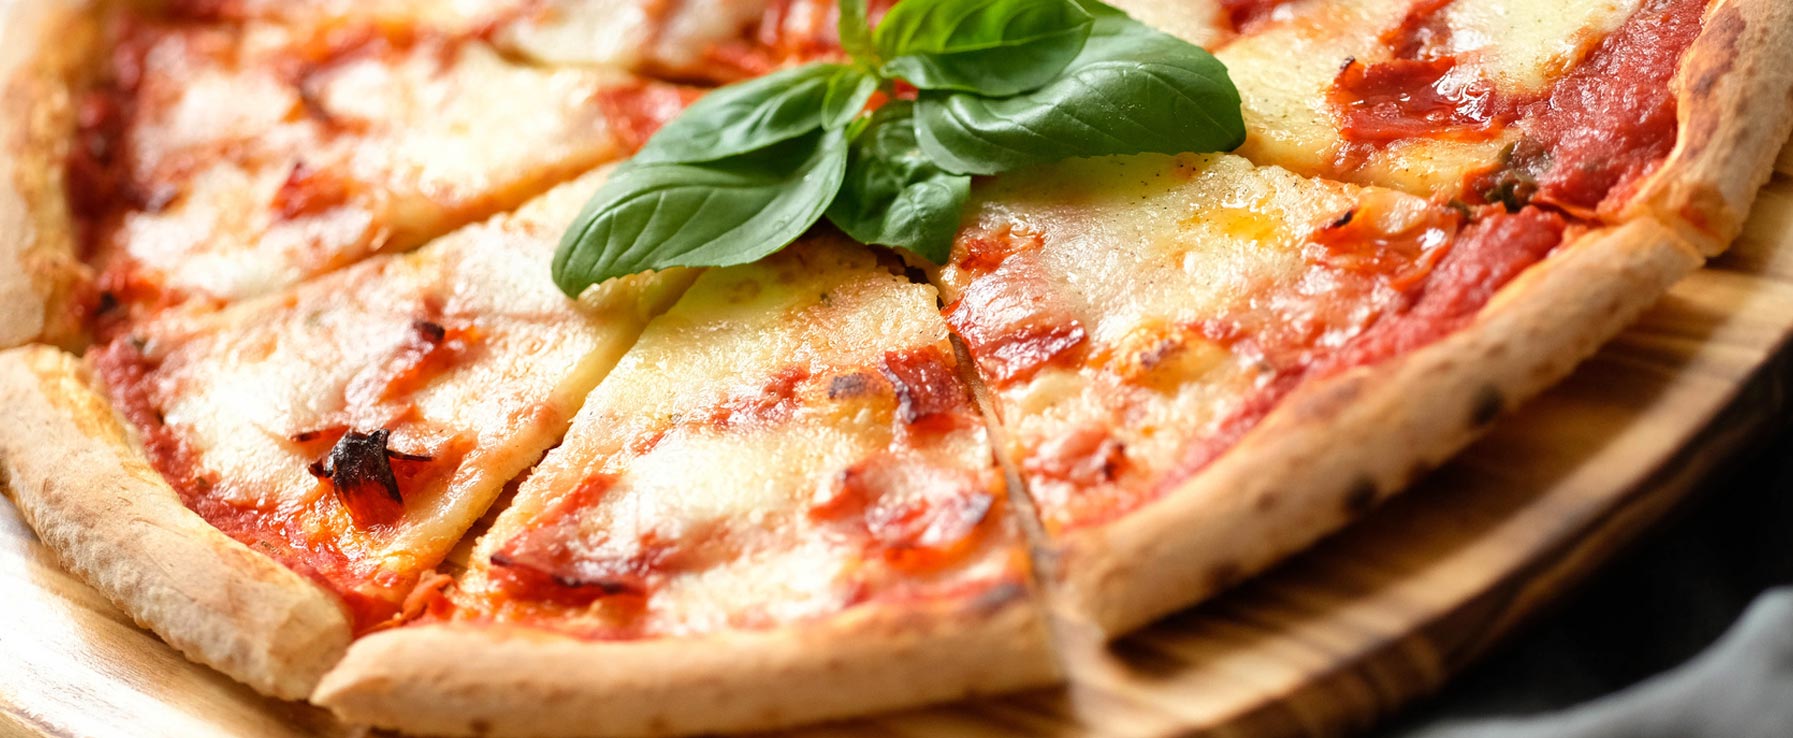 Filatella - A stringy pleasure on your pizza